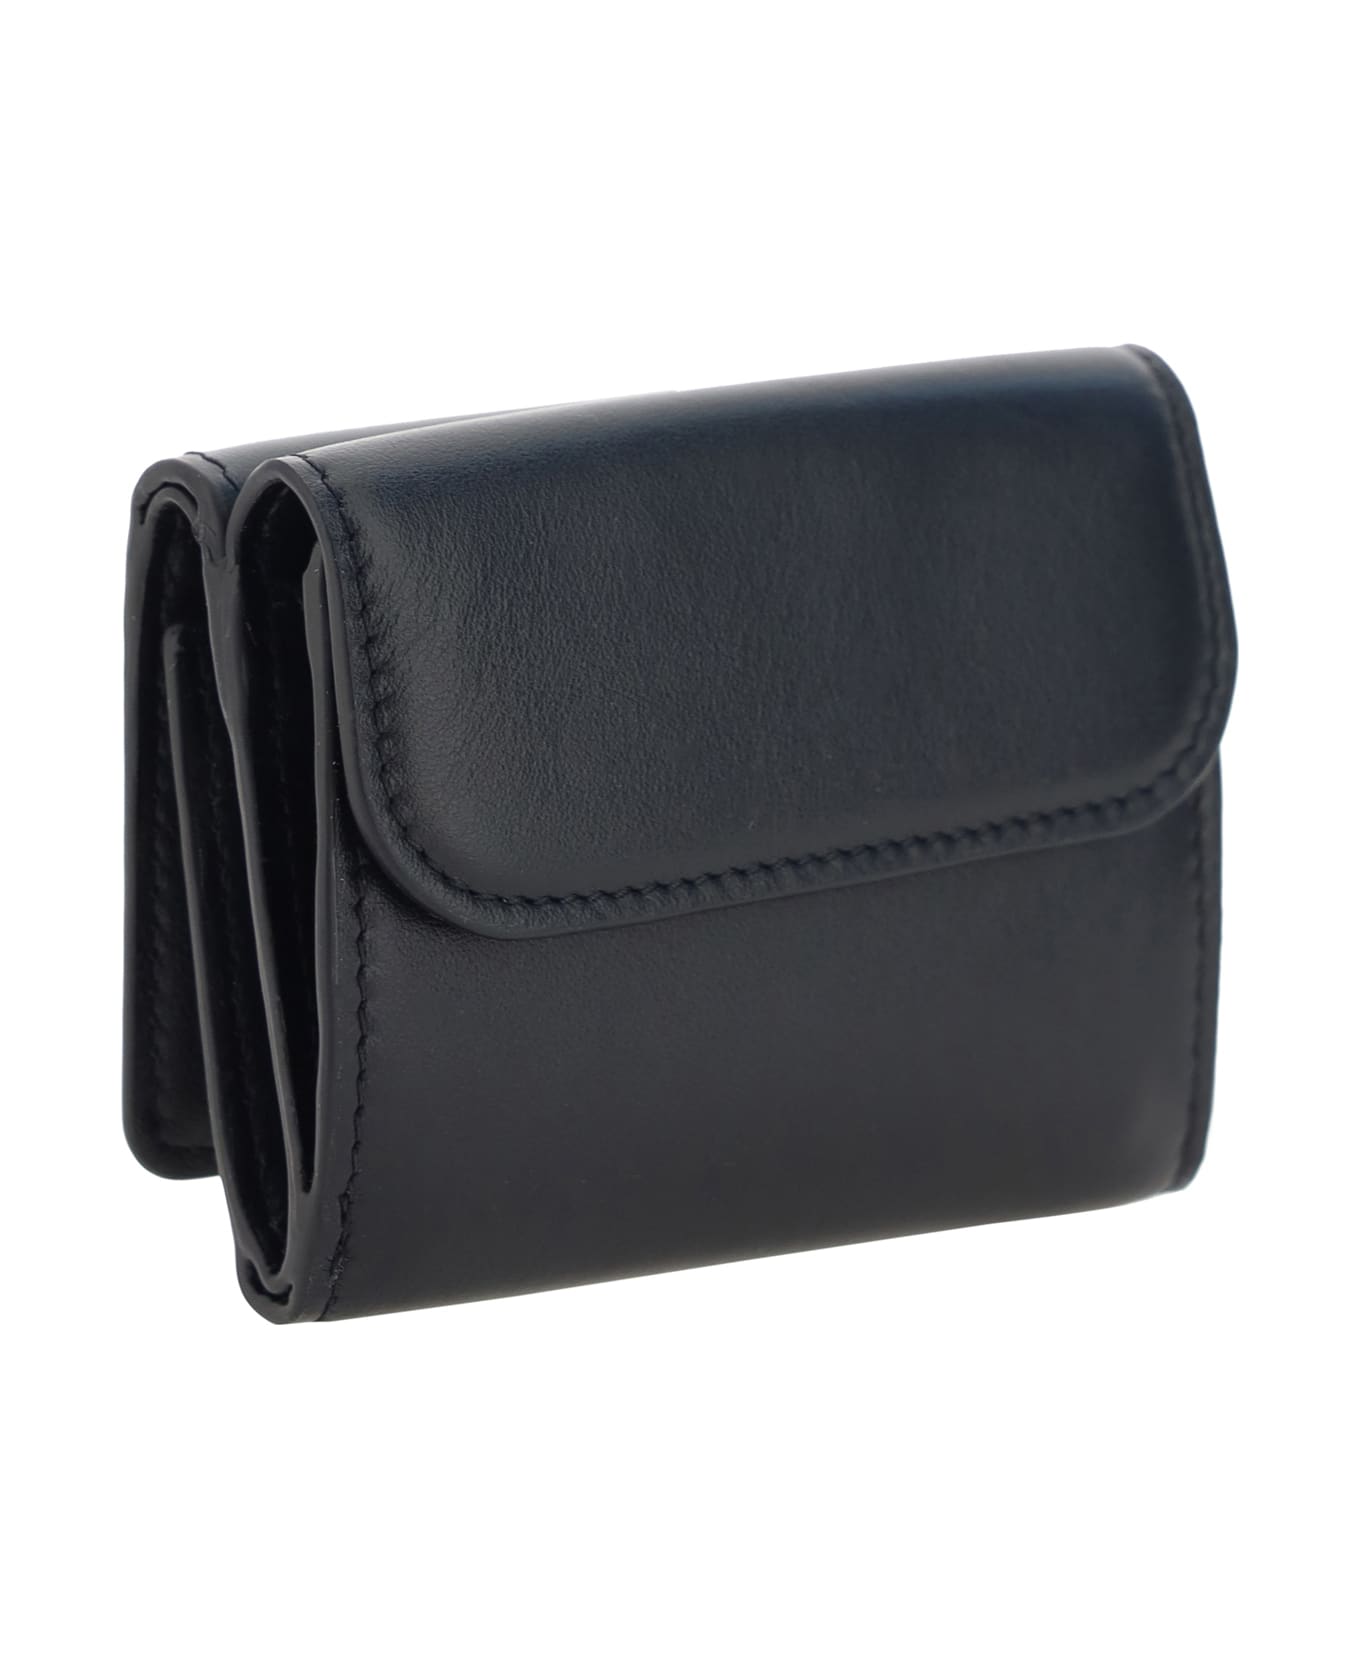 Chloé Chloè Leather Wallet - Black